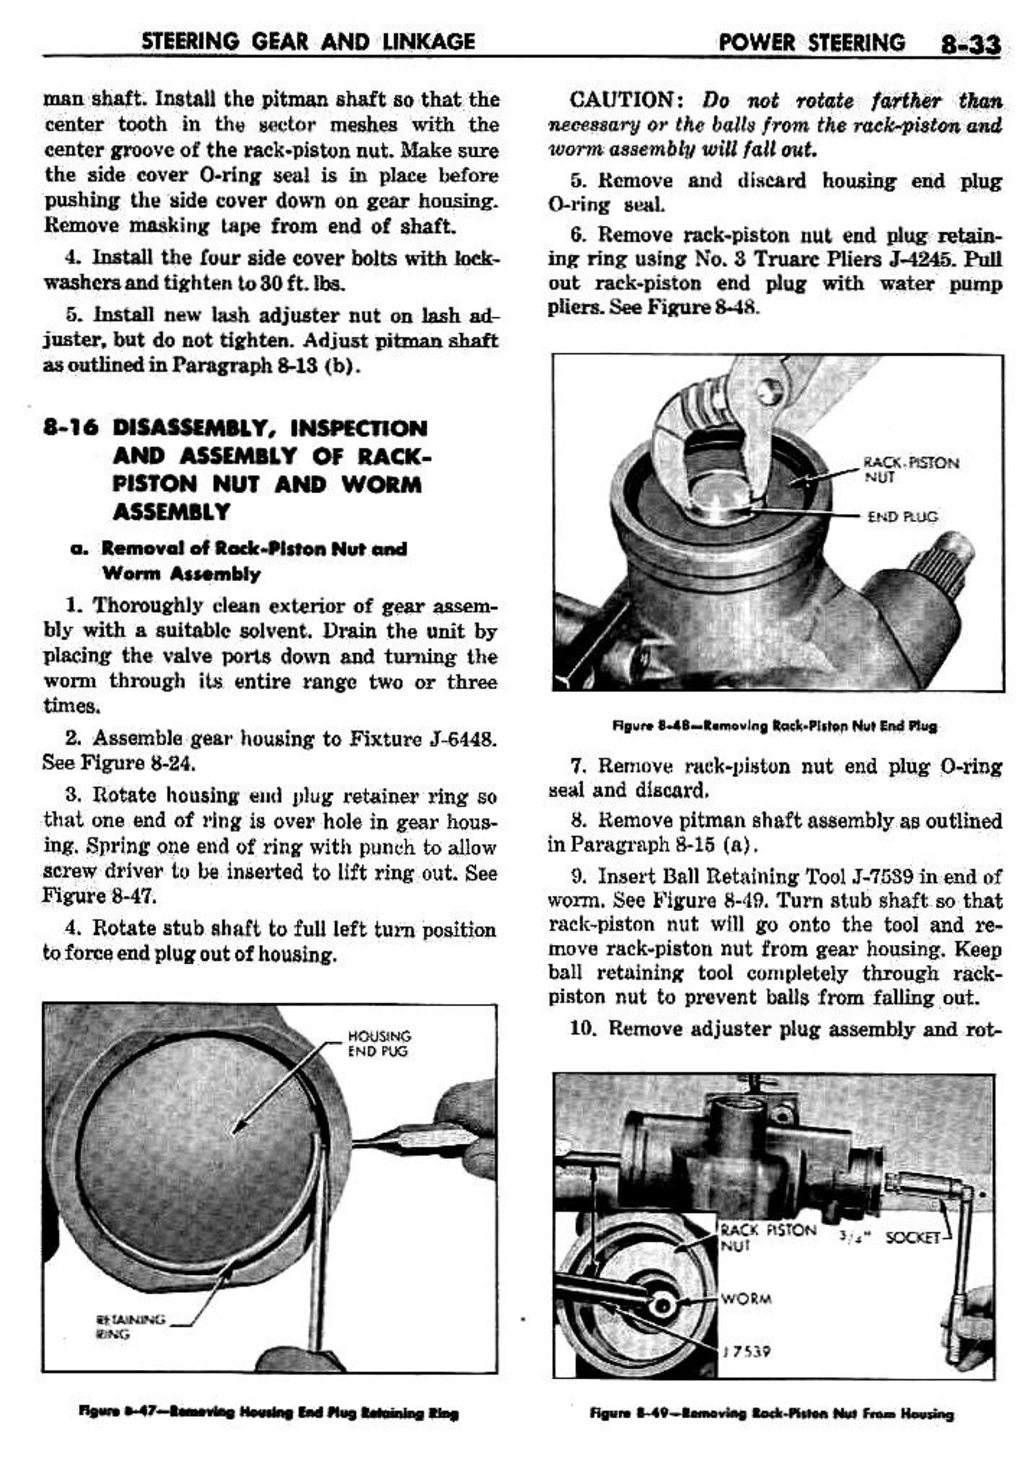 n_09 1959 Buick Shop Manual - Steering-033-033.jpg